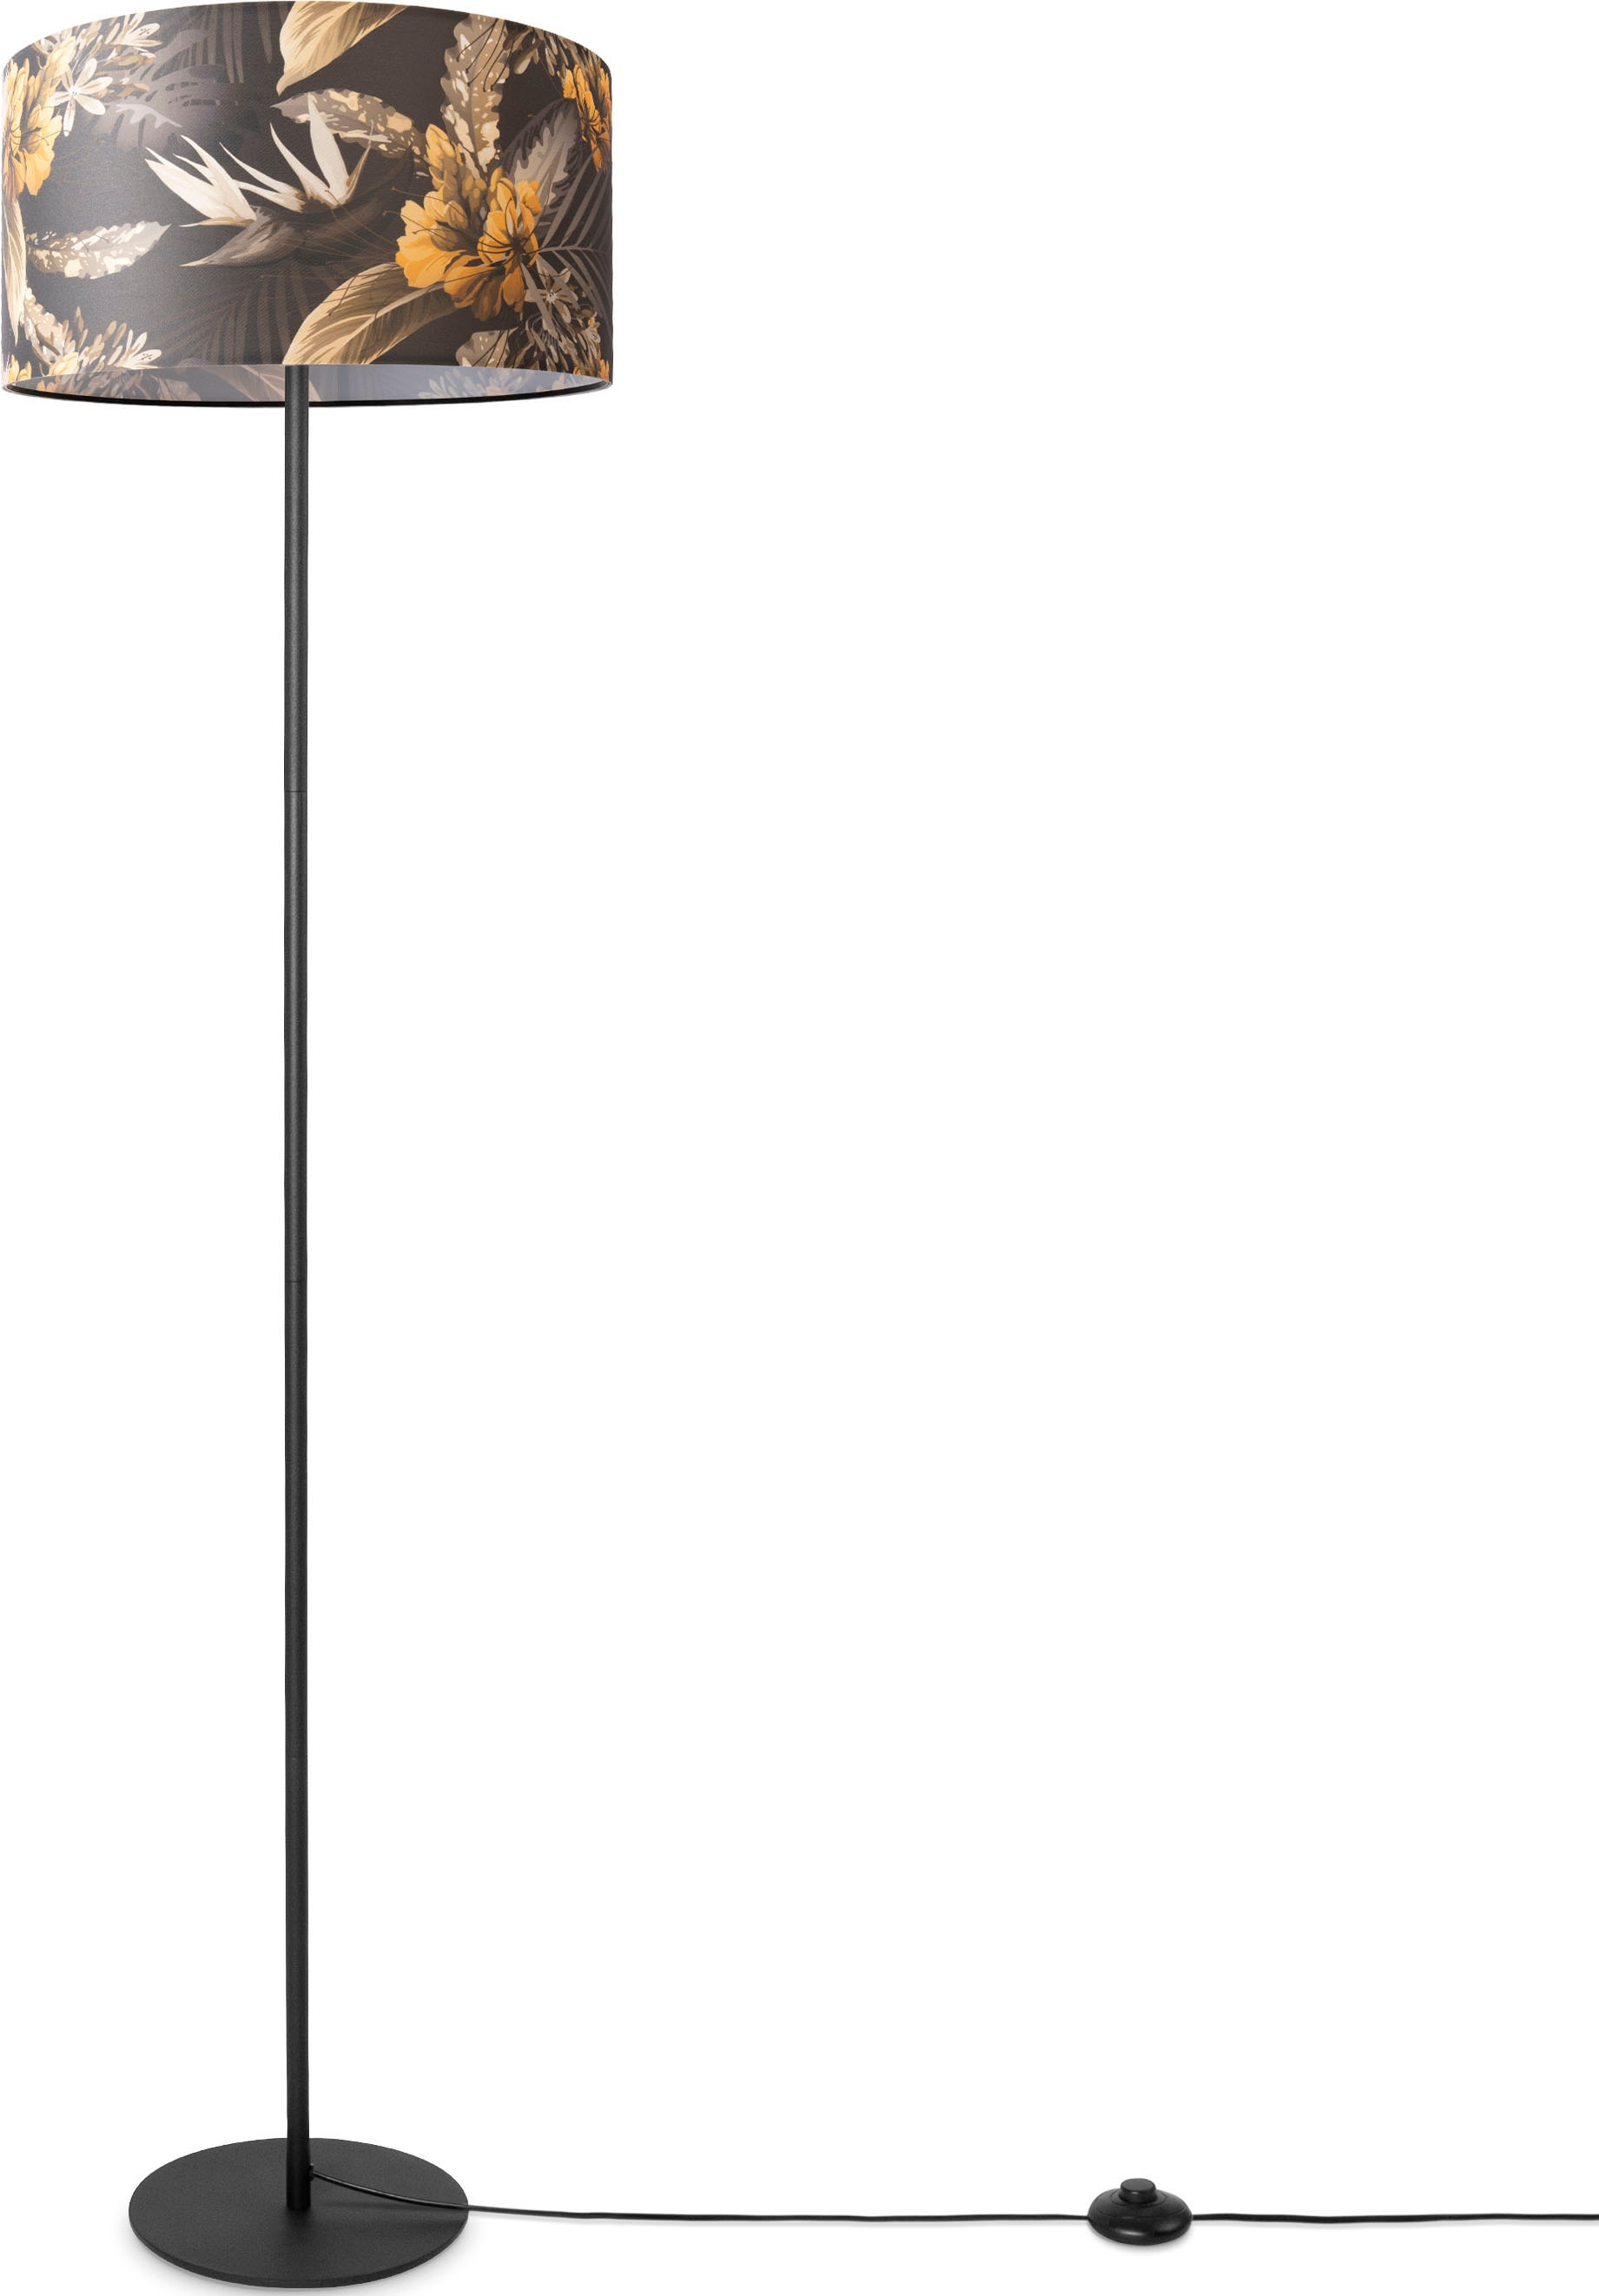 Textil Paco | Schirm Stehlampe 3 online Garantie mit Blumen Jahren Lampenschirm »Luca Muster Wohnzimmer Flower«, Standlampe Home Stoff XXL kaufen